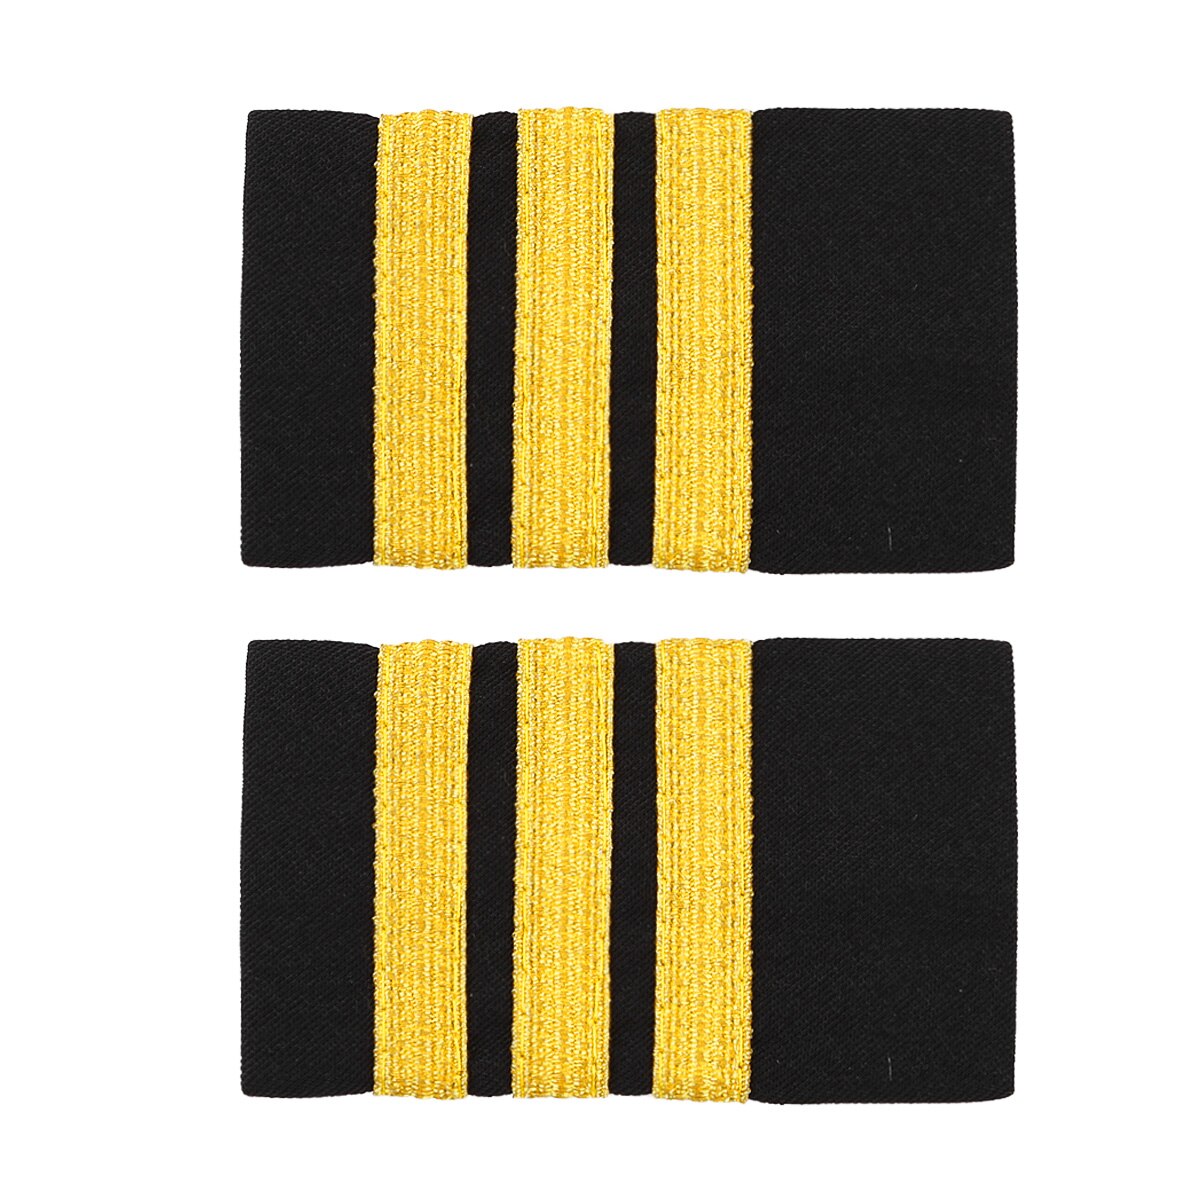 1 paar Traditionellen Uniform Dekor Epauletten Professionelle Pilot Shirt Epauletten DIY Gold Streifen Schulter Bord Abzeichen für Kleidung